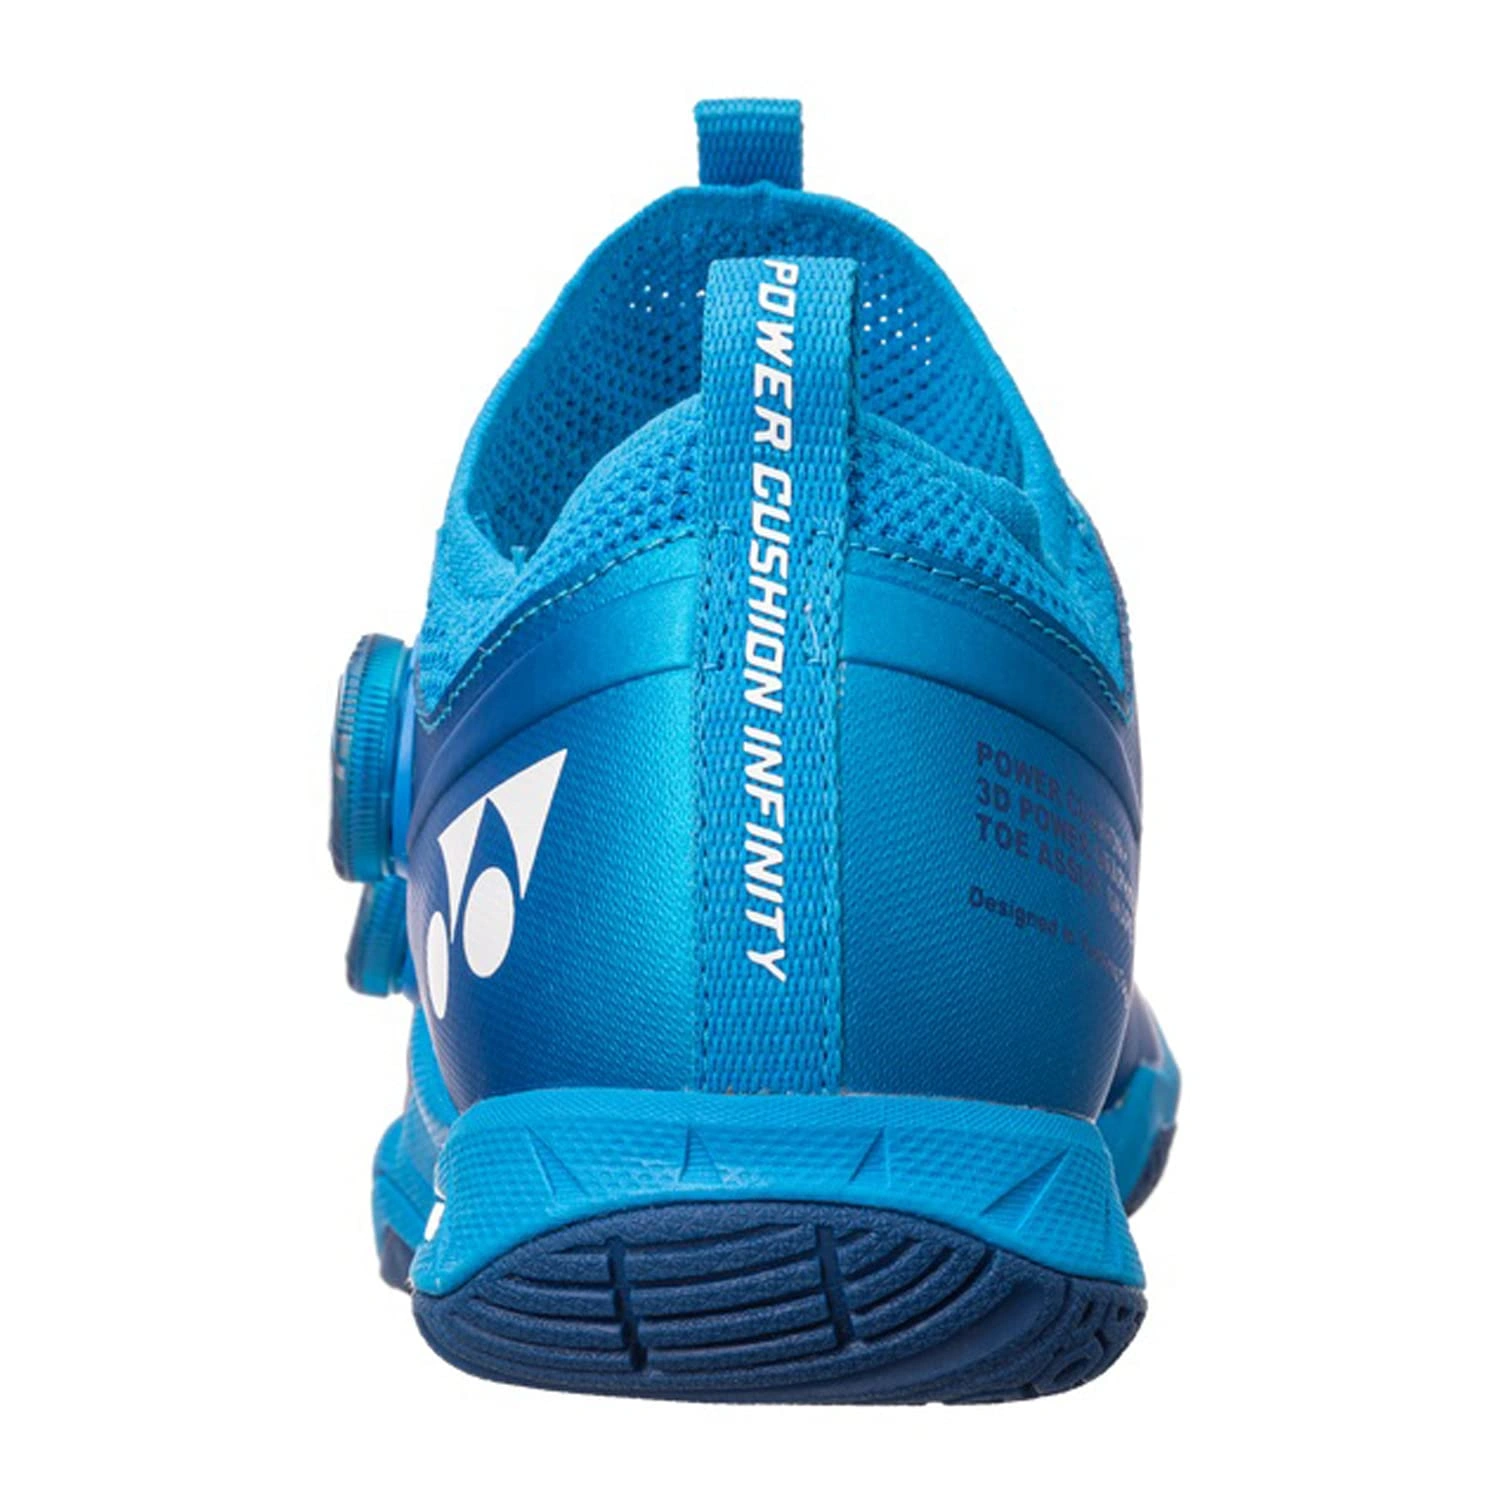 YONEX SHB Infinity 2 EX Power Cushion Badminton Shoes-10-METALIC BLUE-4